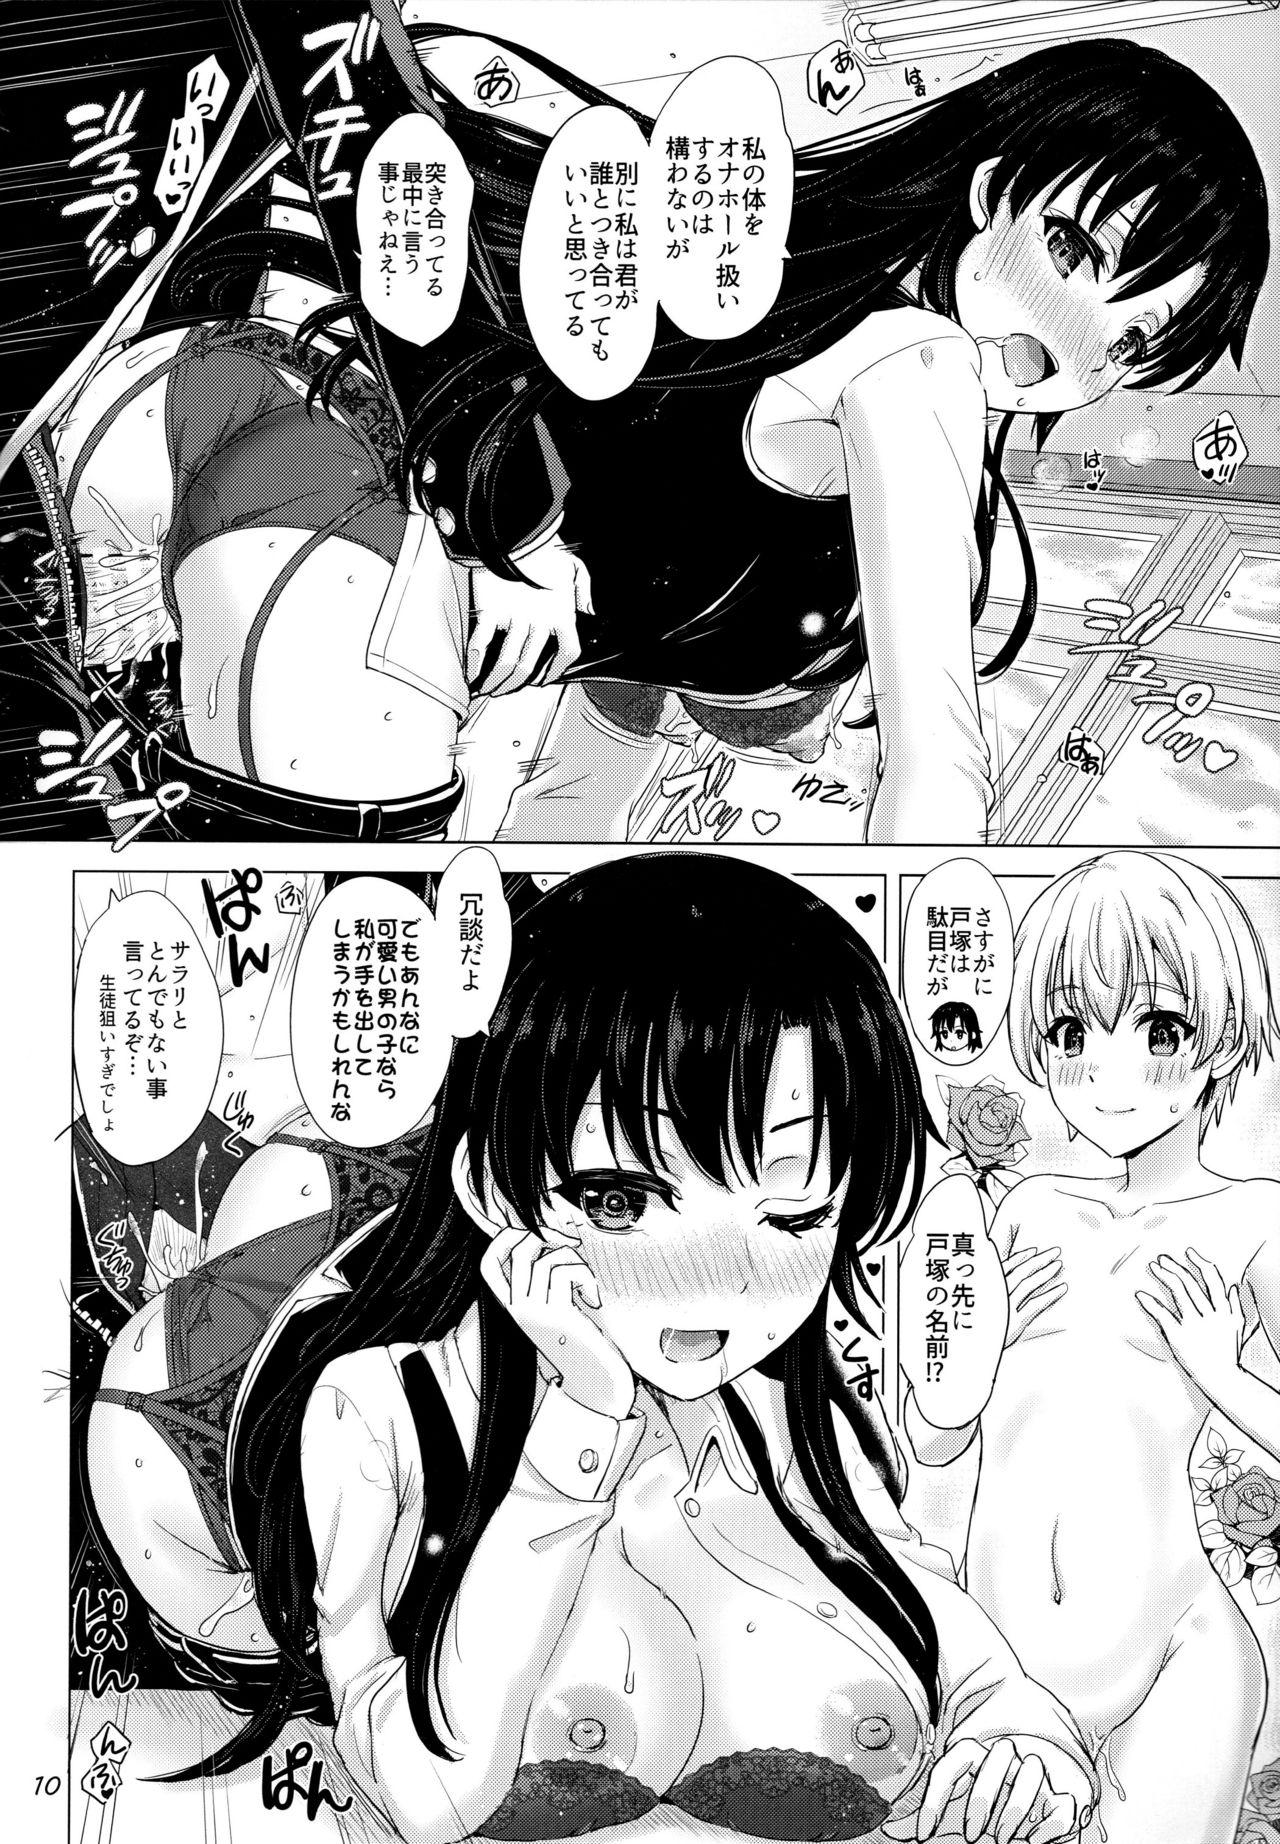 Enema Aru Hi no Hotetta Onnanoko-tachi. - Yahari ore no seishun love come wa machigatteiru Gay Porn - Page 9